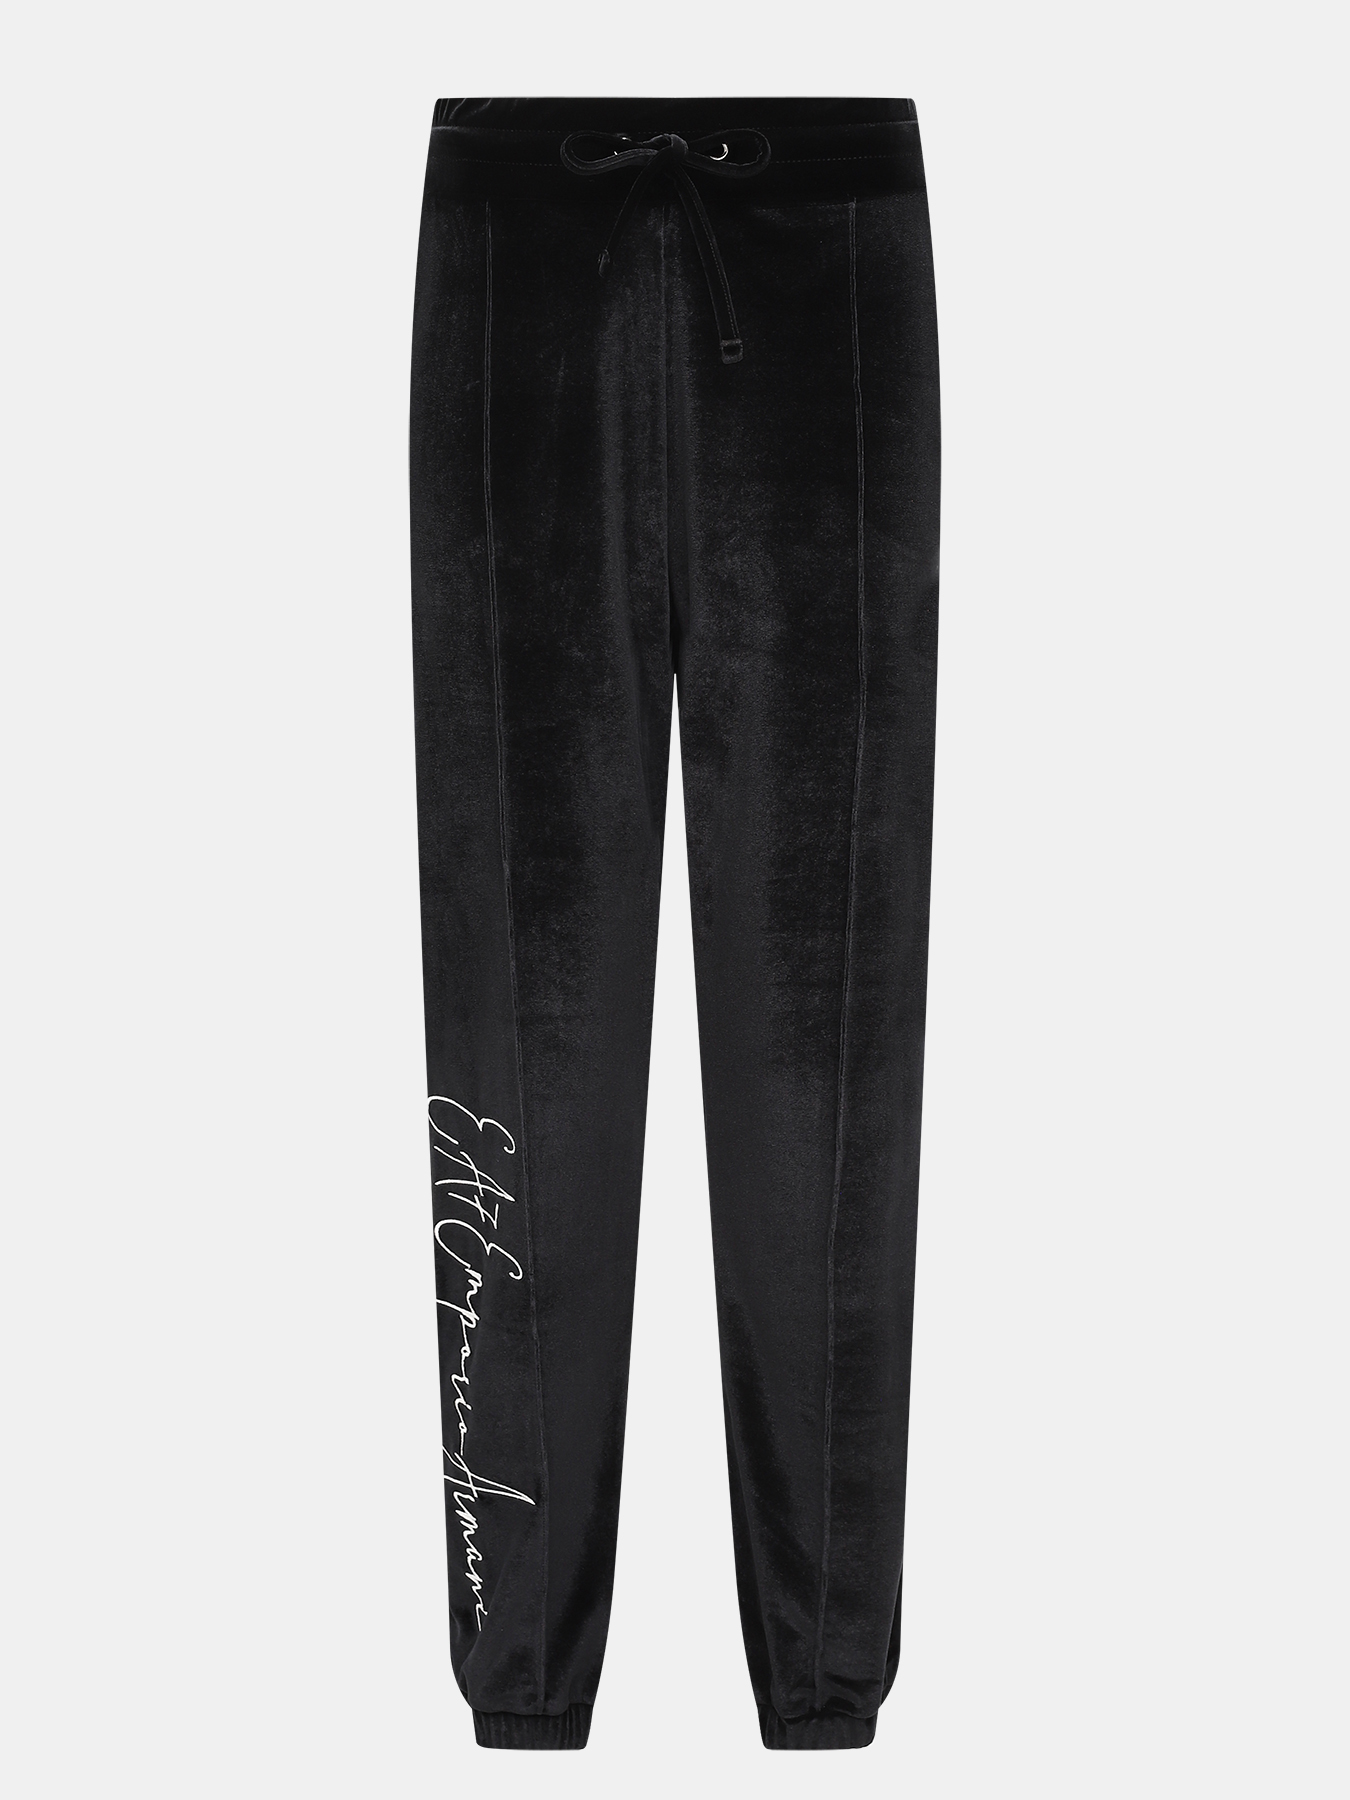 Спортивные брюки EA7 Emporio Armani 423041-043, цвет черный, размер 44-46 - фото 1